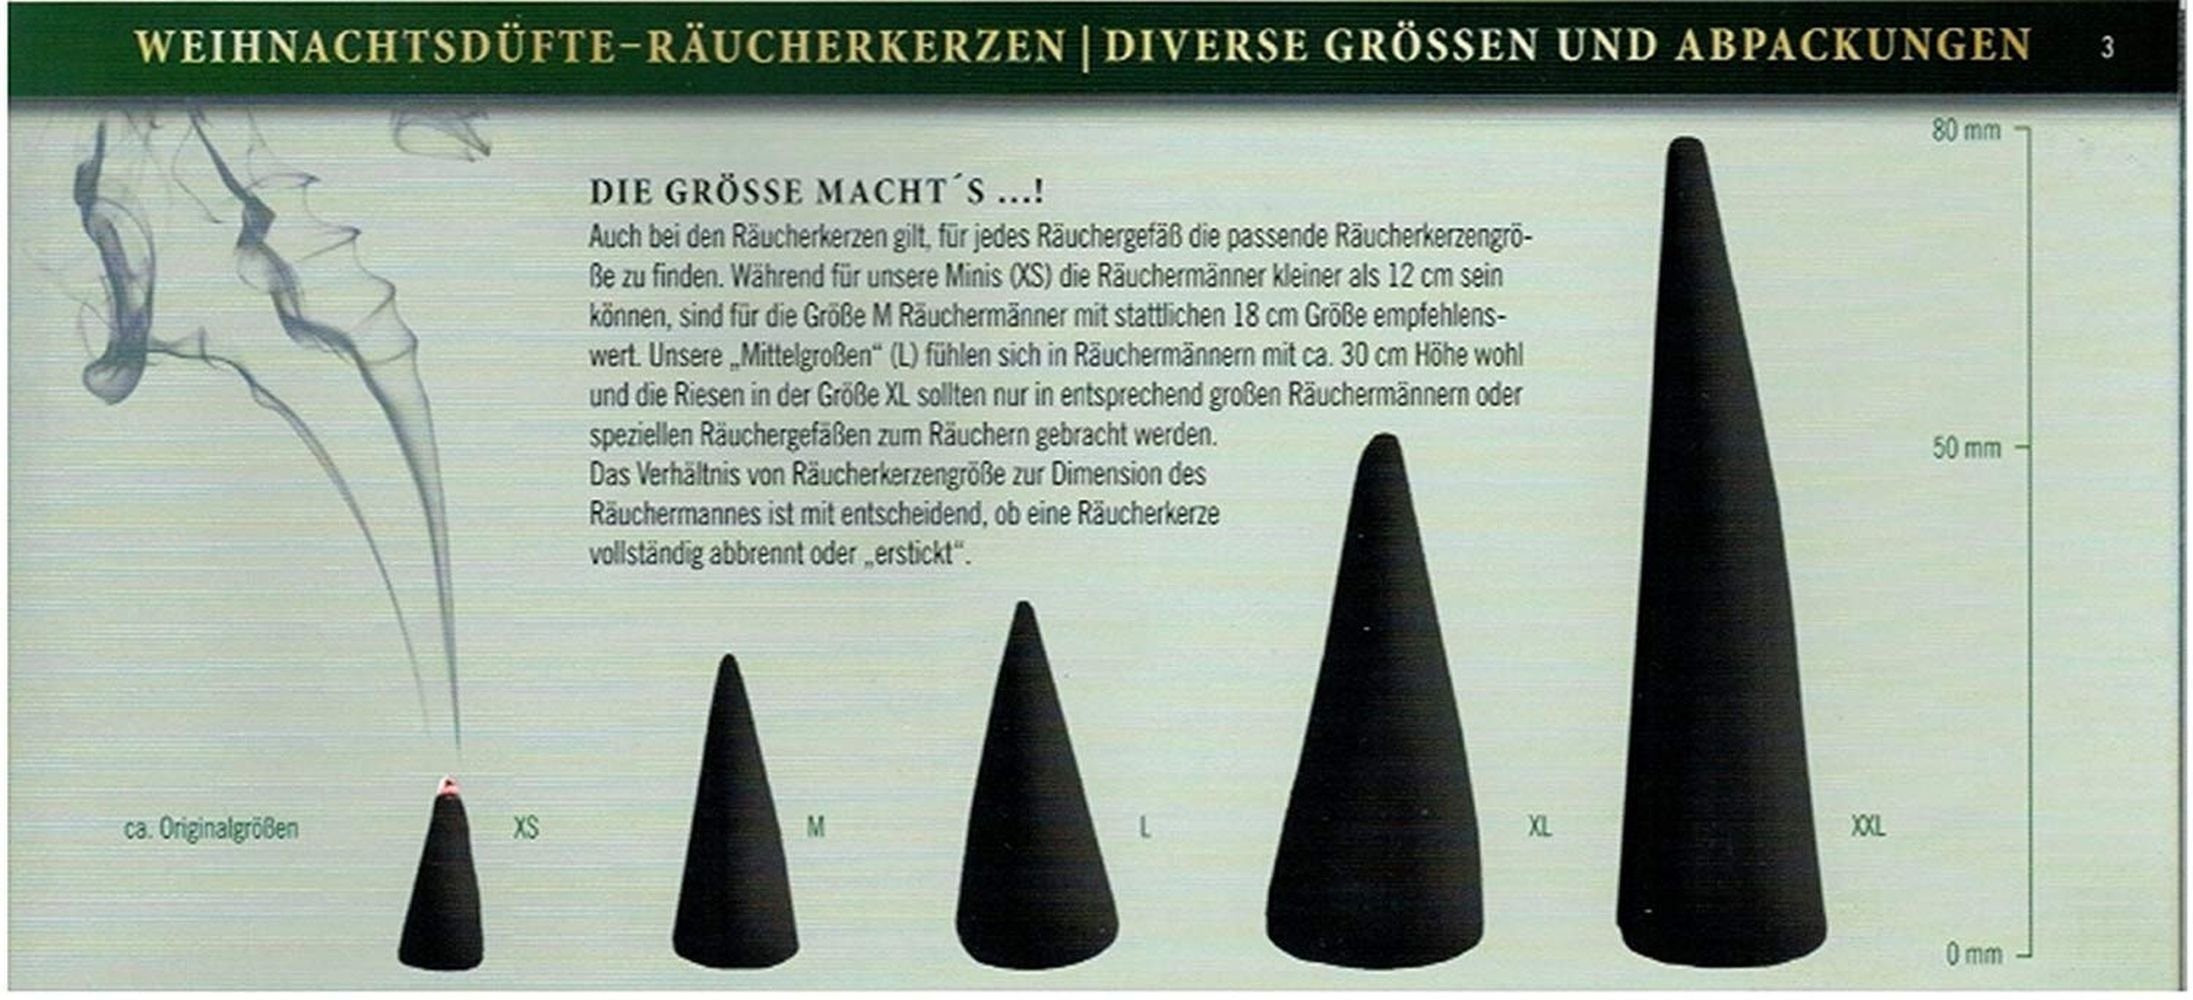 Crottendorfer Räuchermännchen Päckchen XXL - 20er Packung - Riesen Weihrauch 6